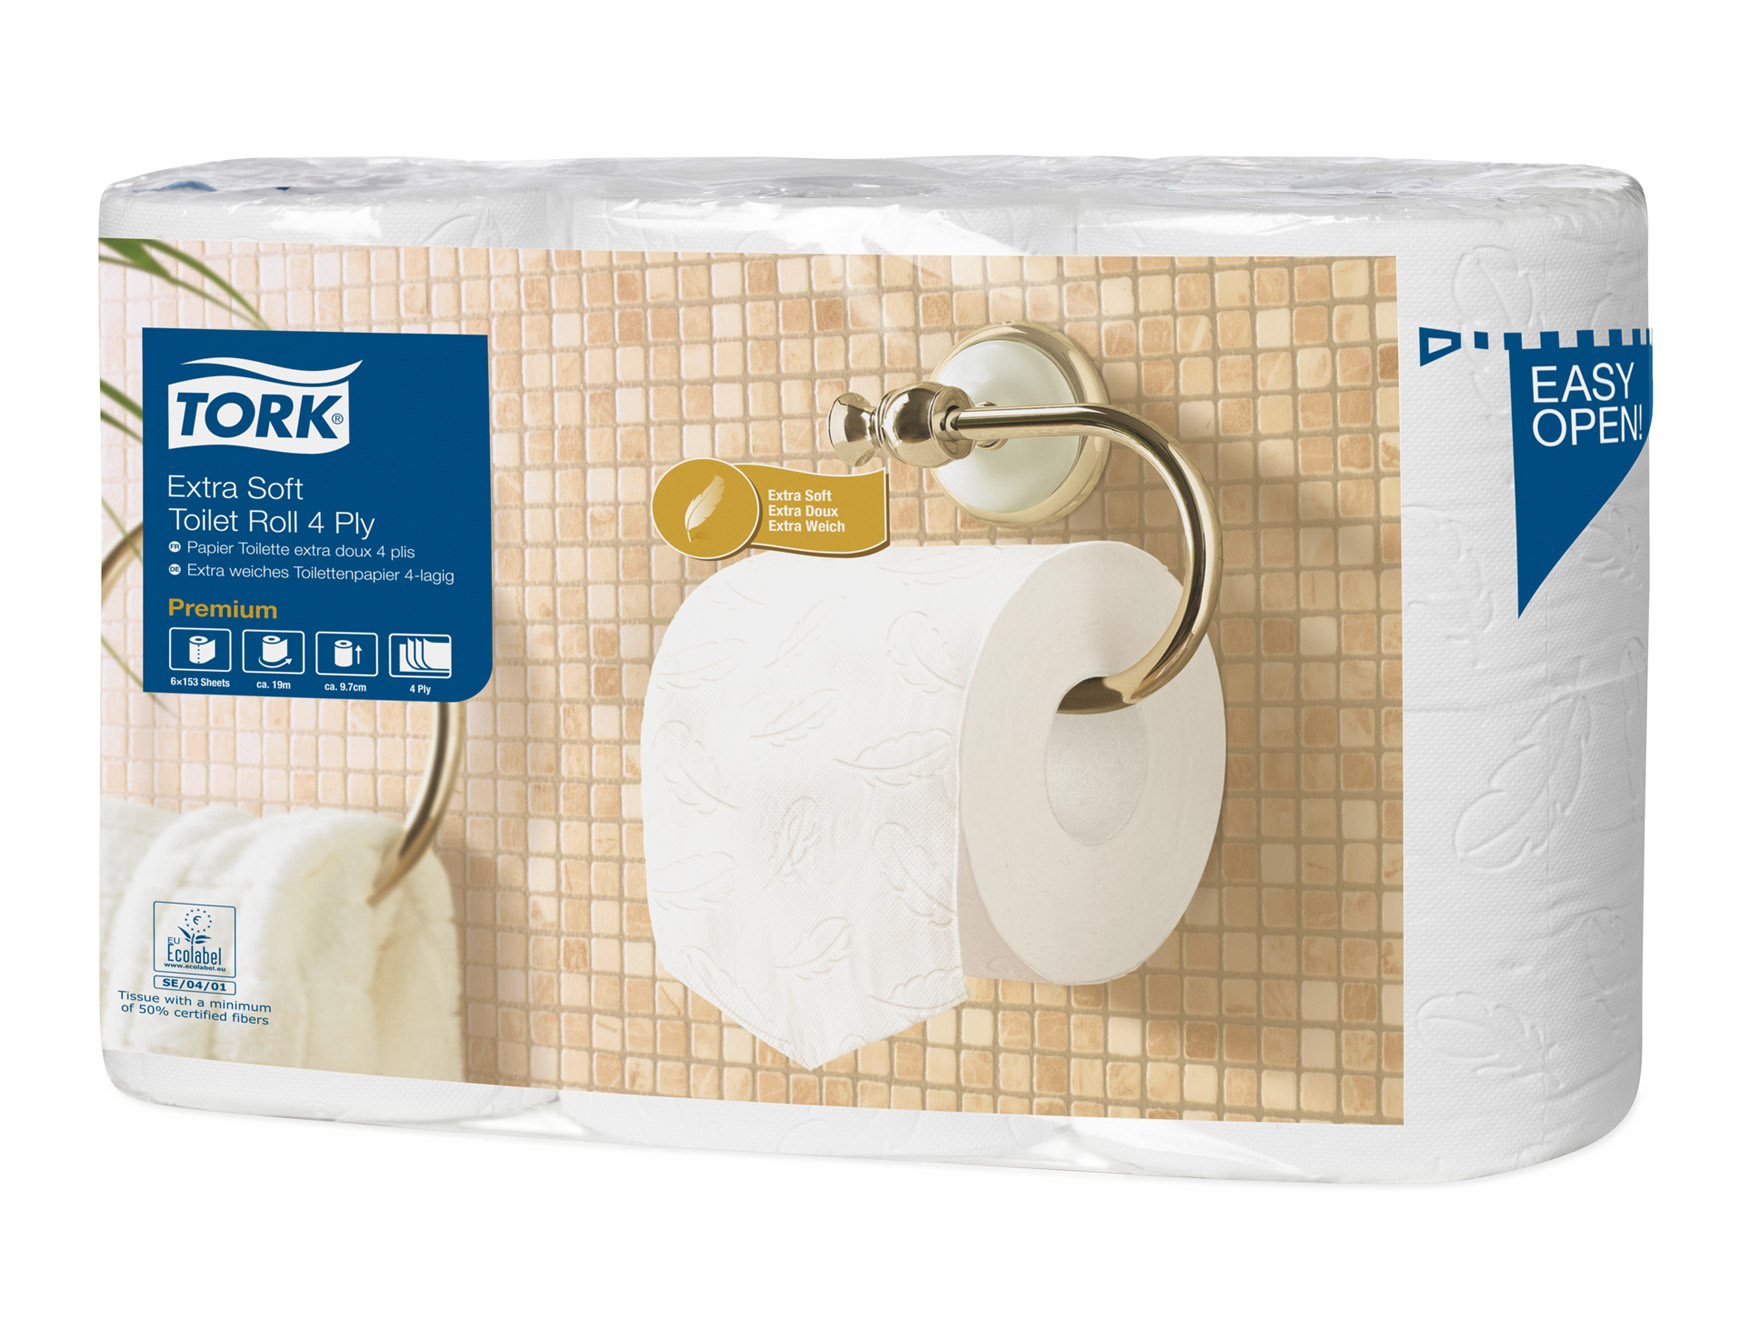 Premium toiletpapier - 4-laags - 150 vellen - 7 x 6 rollen